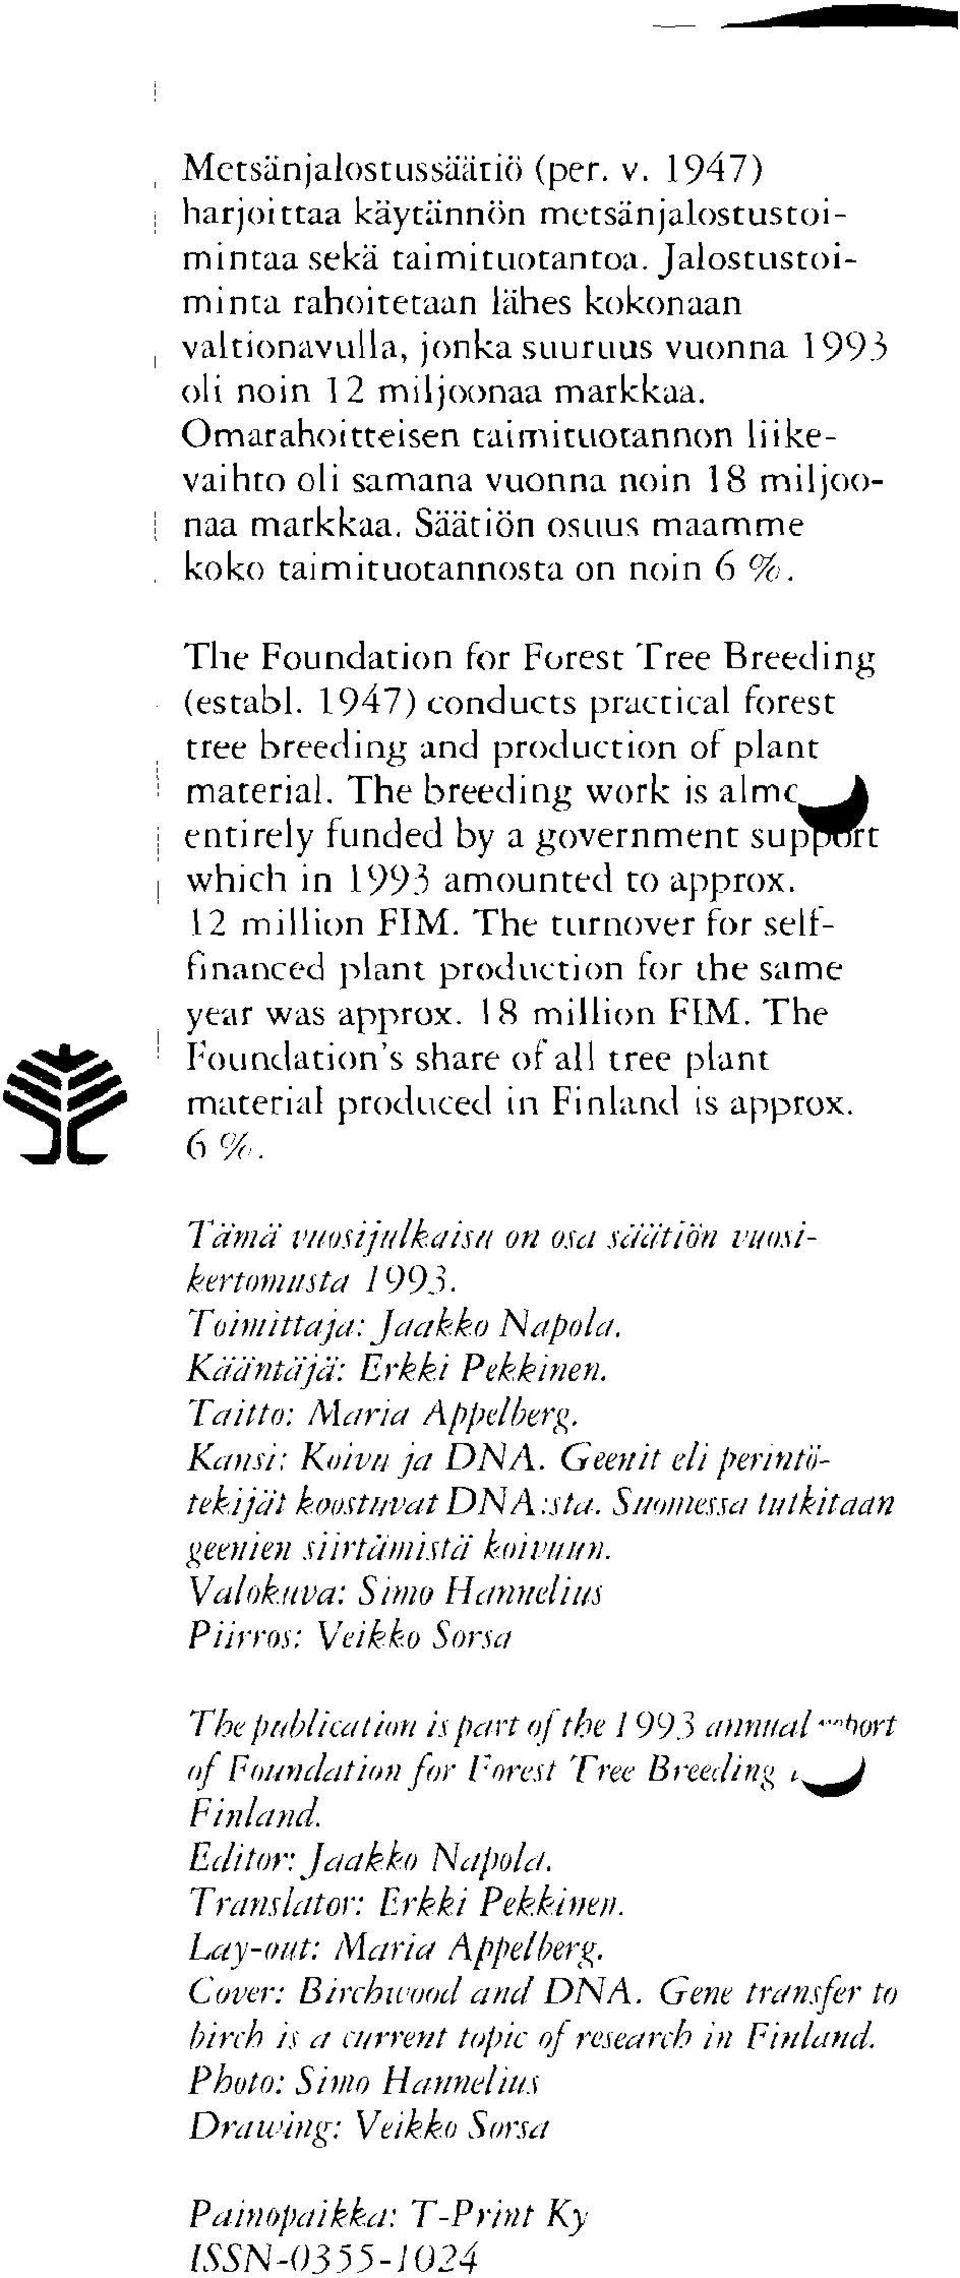 Omarahoitteisen caiiriit~iorannon liikevaihto oli samana vuonna noin 18 miljoonaa markkaa. Säätiön os~iuq maamme koko taimituotannosta on noin 6 96. Tlie Foundation for Forest Tree Breeding (establ.